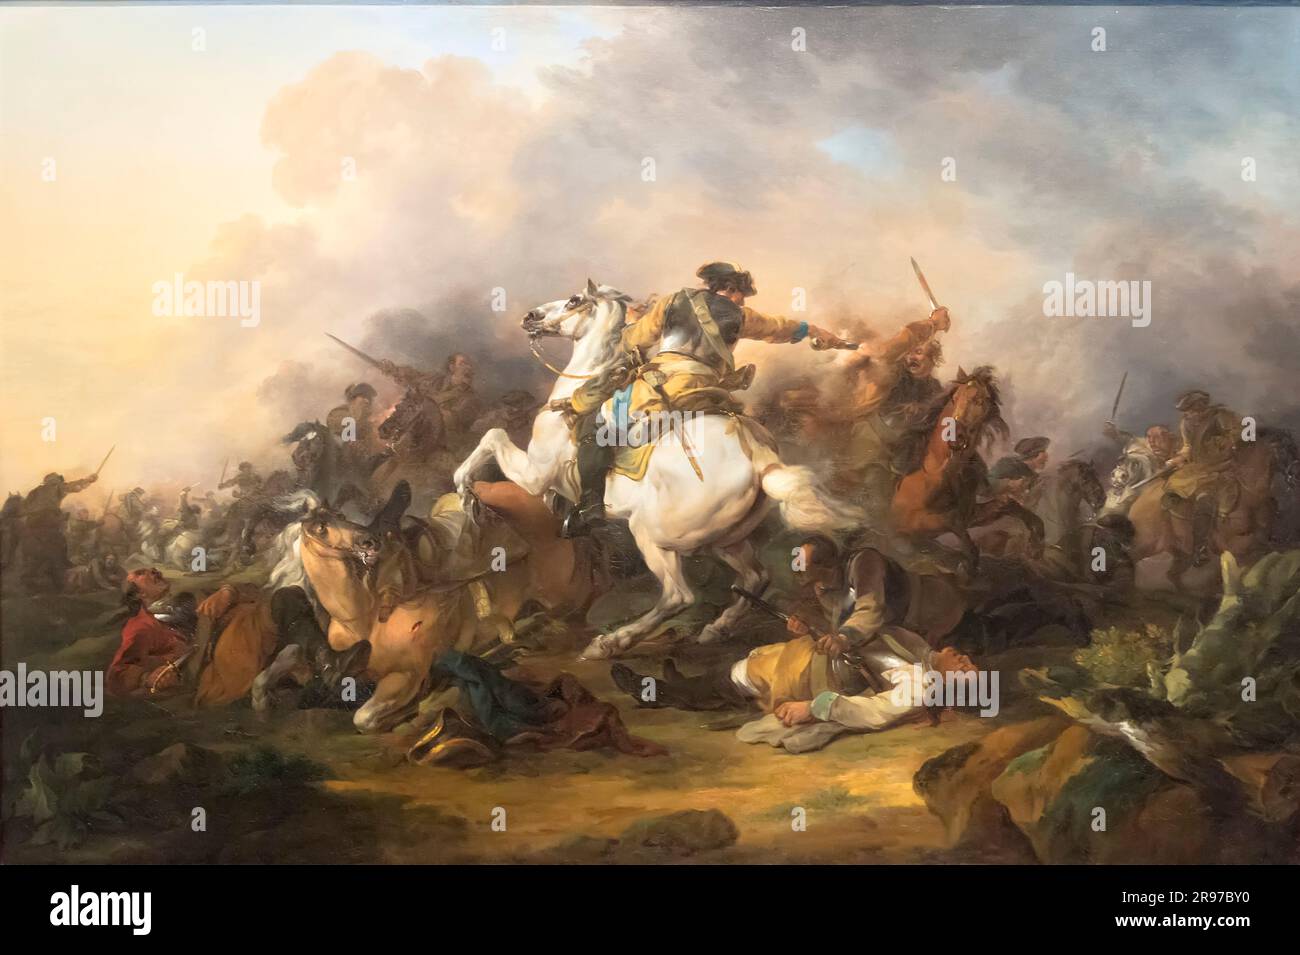 Cavalleria Battaglia olio su tela dipinto di Francesco Casanova 1757 - 83 al Museo del Louvre, Abu Dhabi, Emirati Arabi Uniti Foto Stock